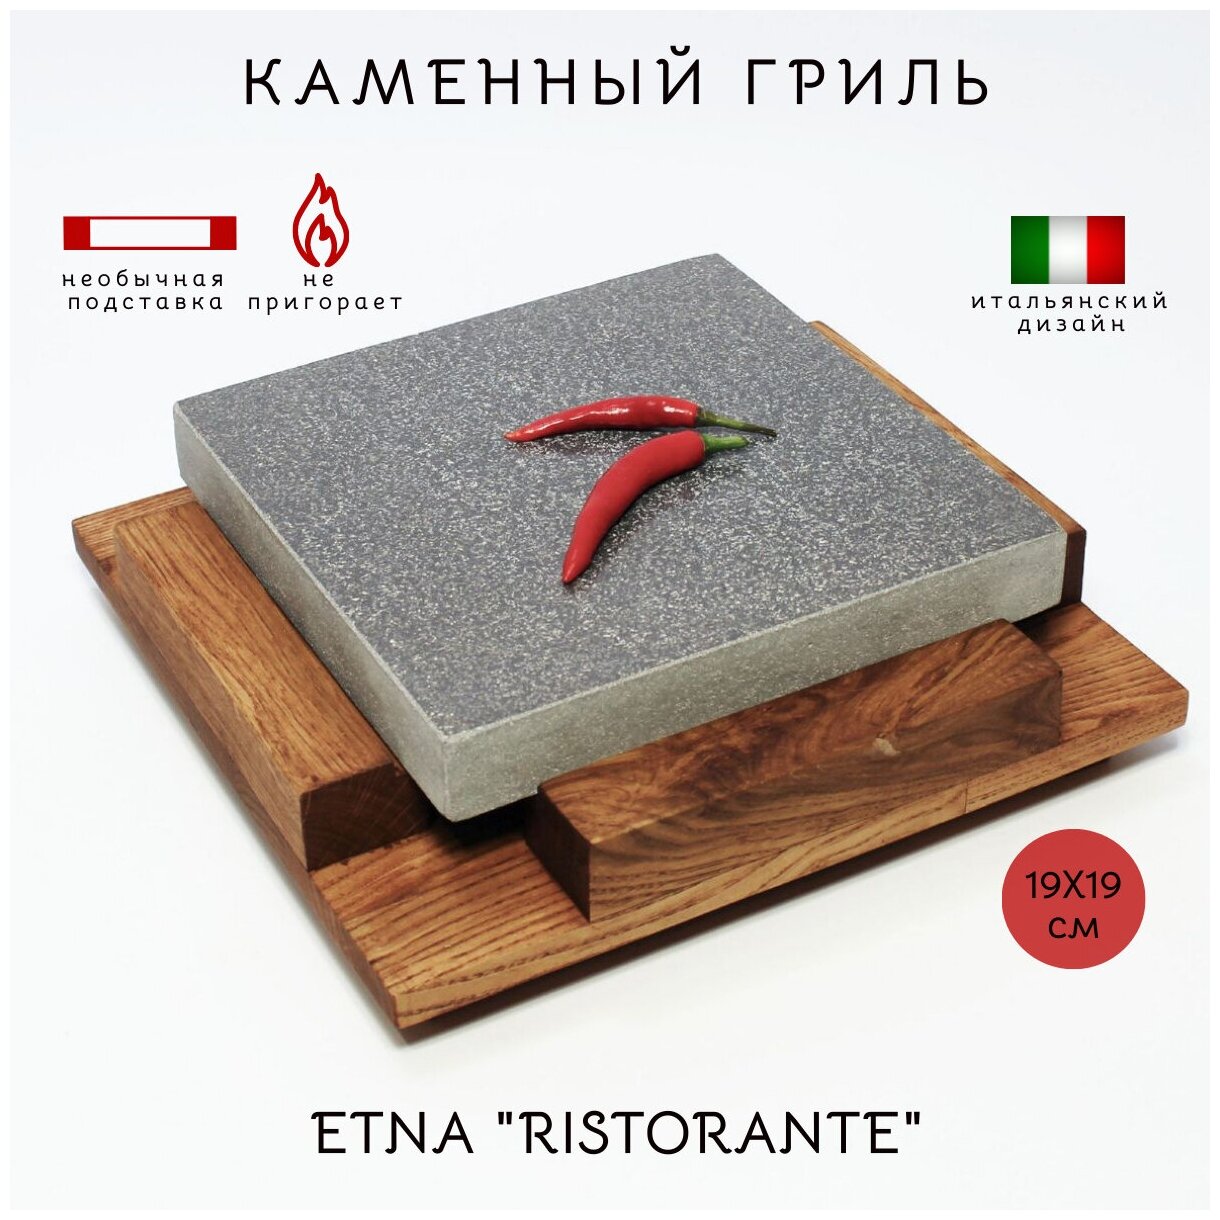 Каменный гриль ETNA RISTORANTE (19х19см). Для жарки на столе мясных стейков, овощей, морепродуктов - фотография № 2